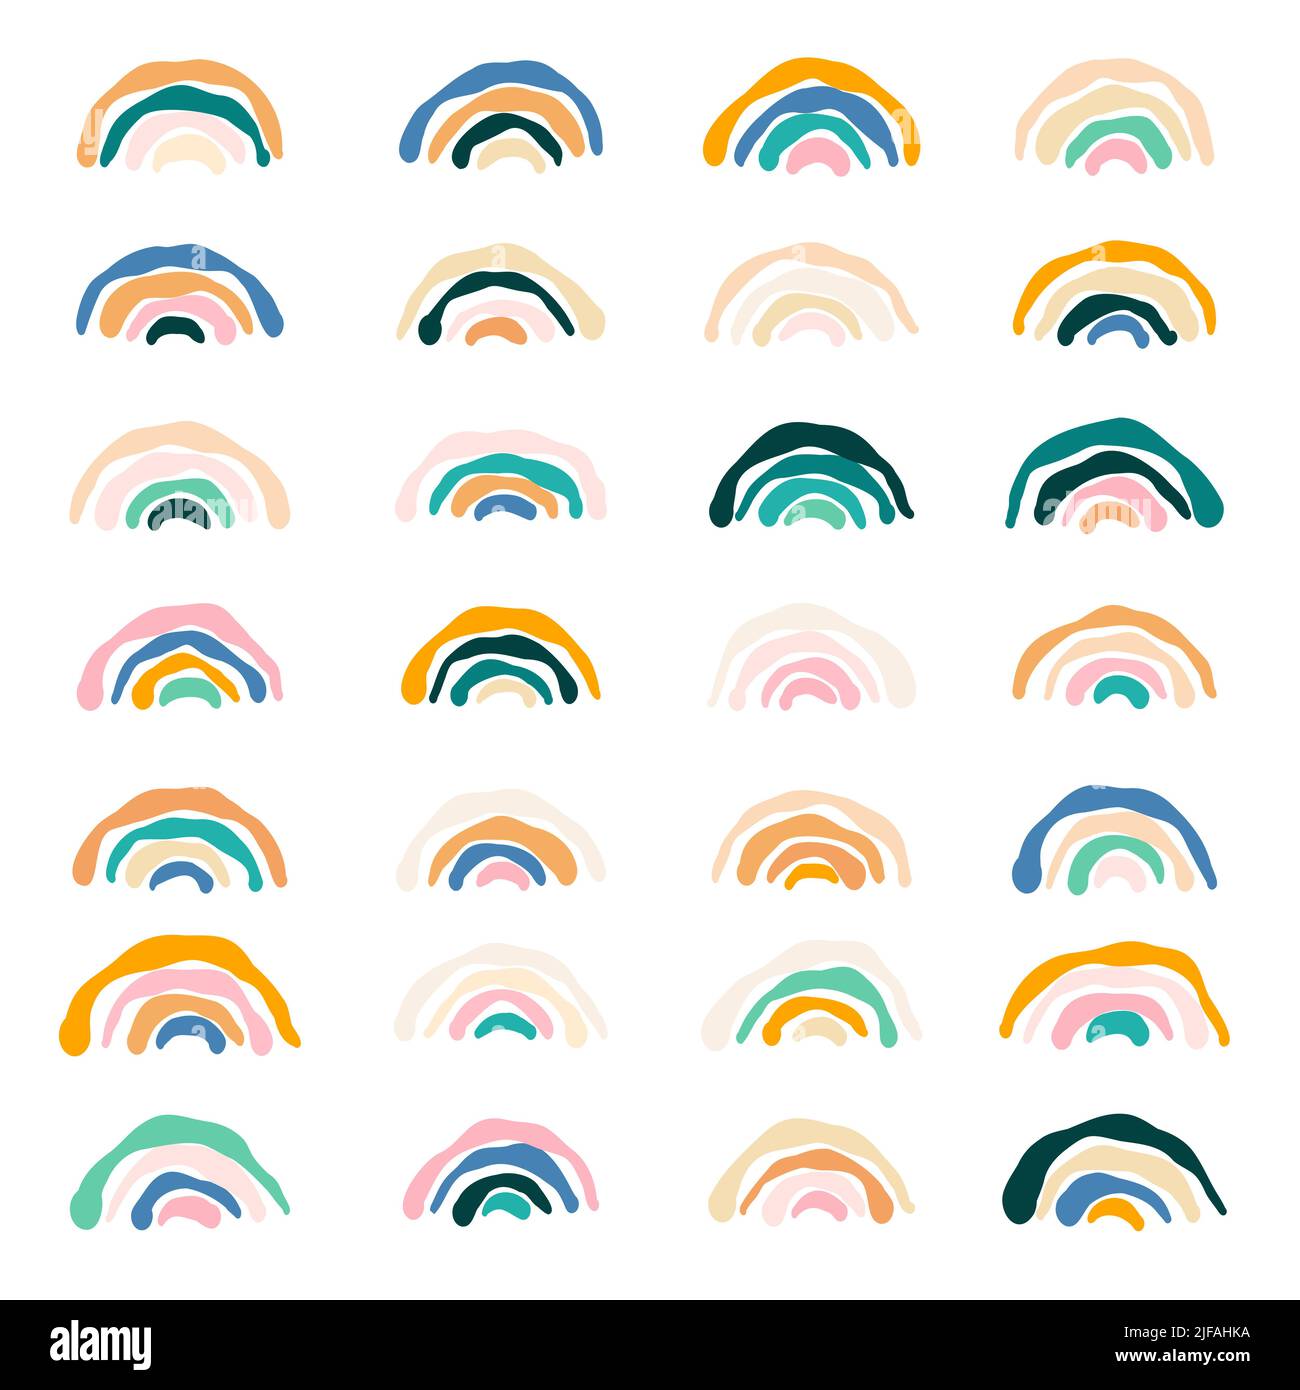 Abstraktes, einfaches Boho-Regenbogen-Set. Tremulous handgezeichnete Linie Bogen Kollektion. Skandinavische Kinderstilelemente für die Kinderkrippe, Baby-Accessoires Stock Vektor